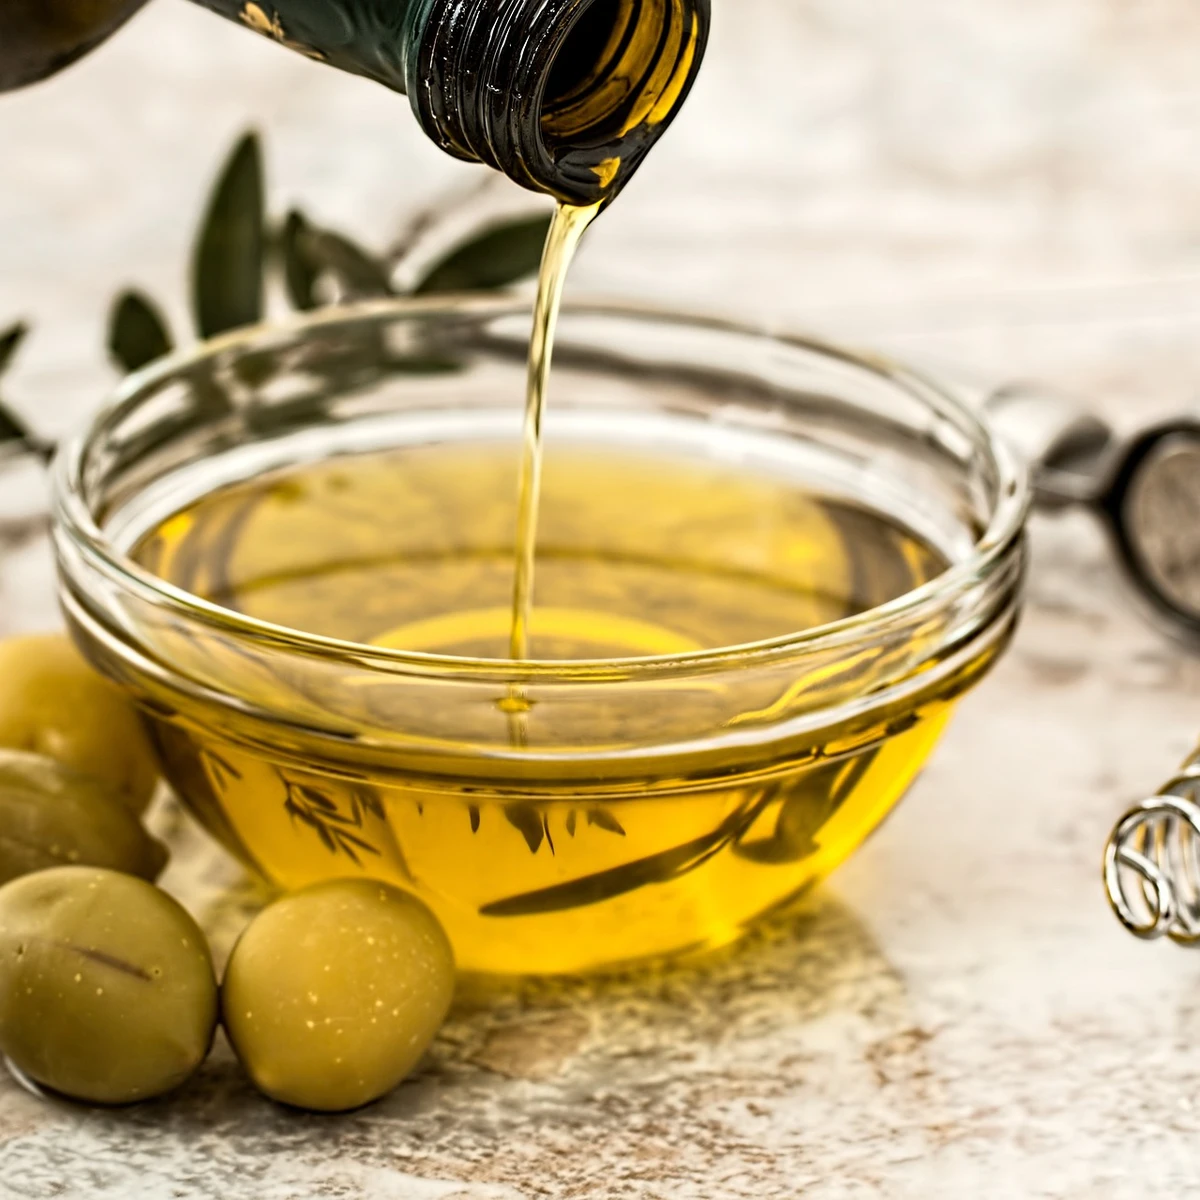 Comment identifier si une huile d'olive ou une huile moteur est en mauvais état ?